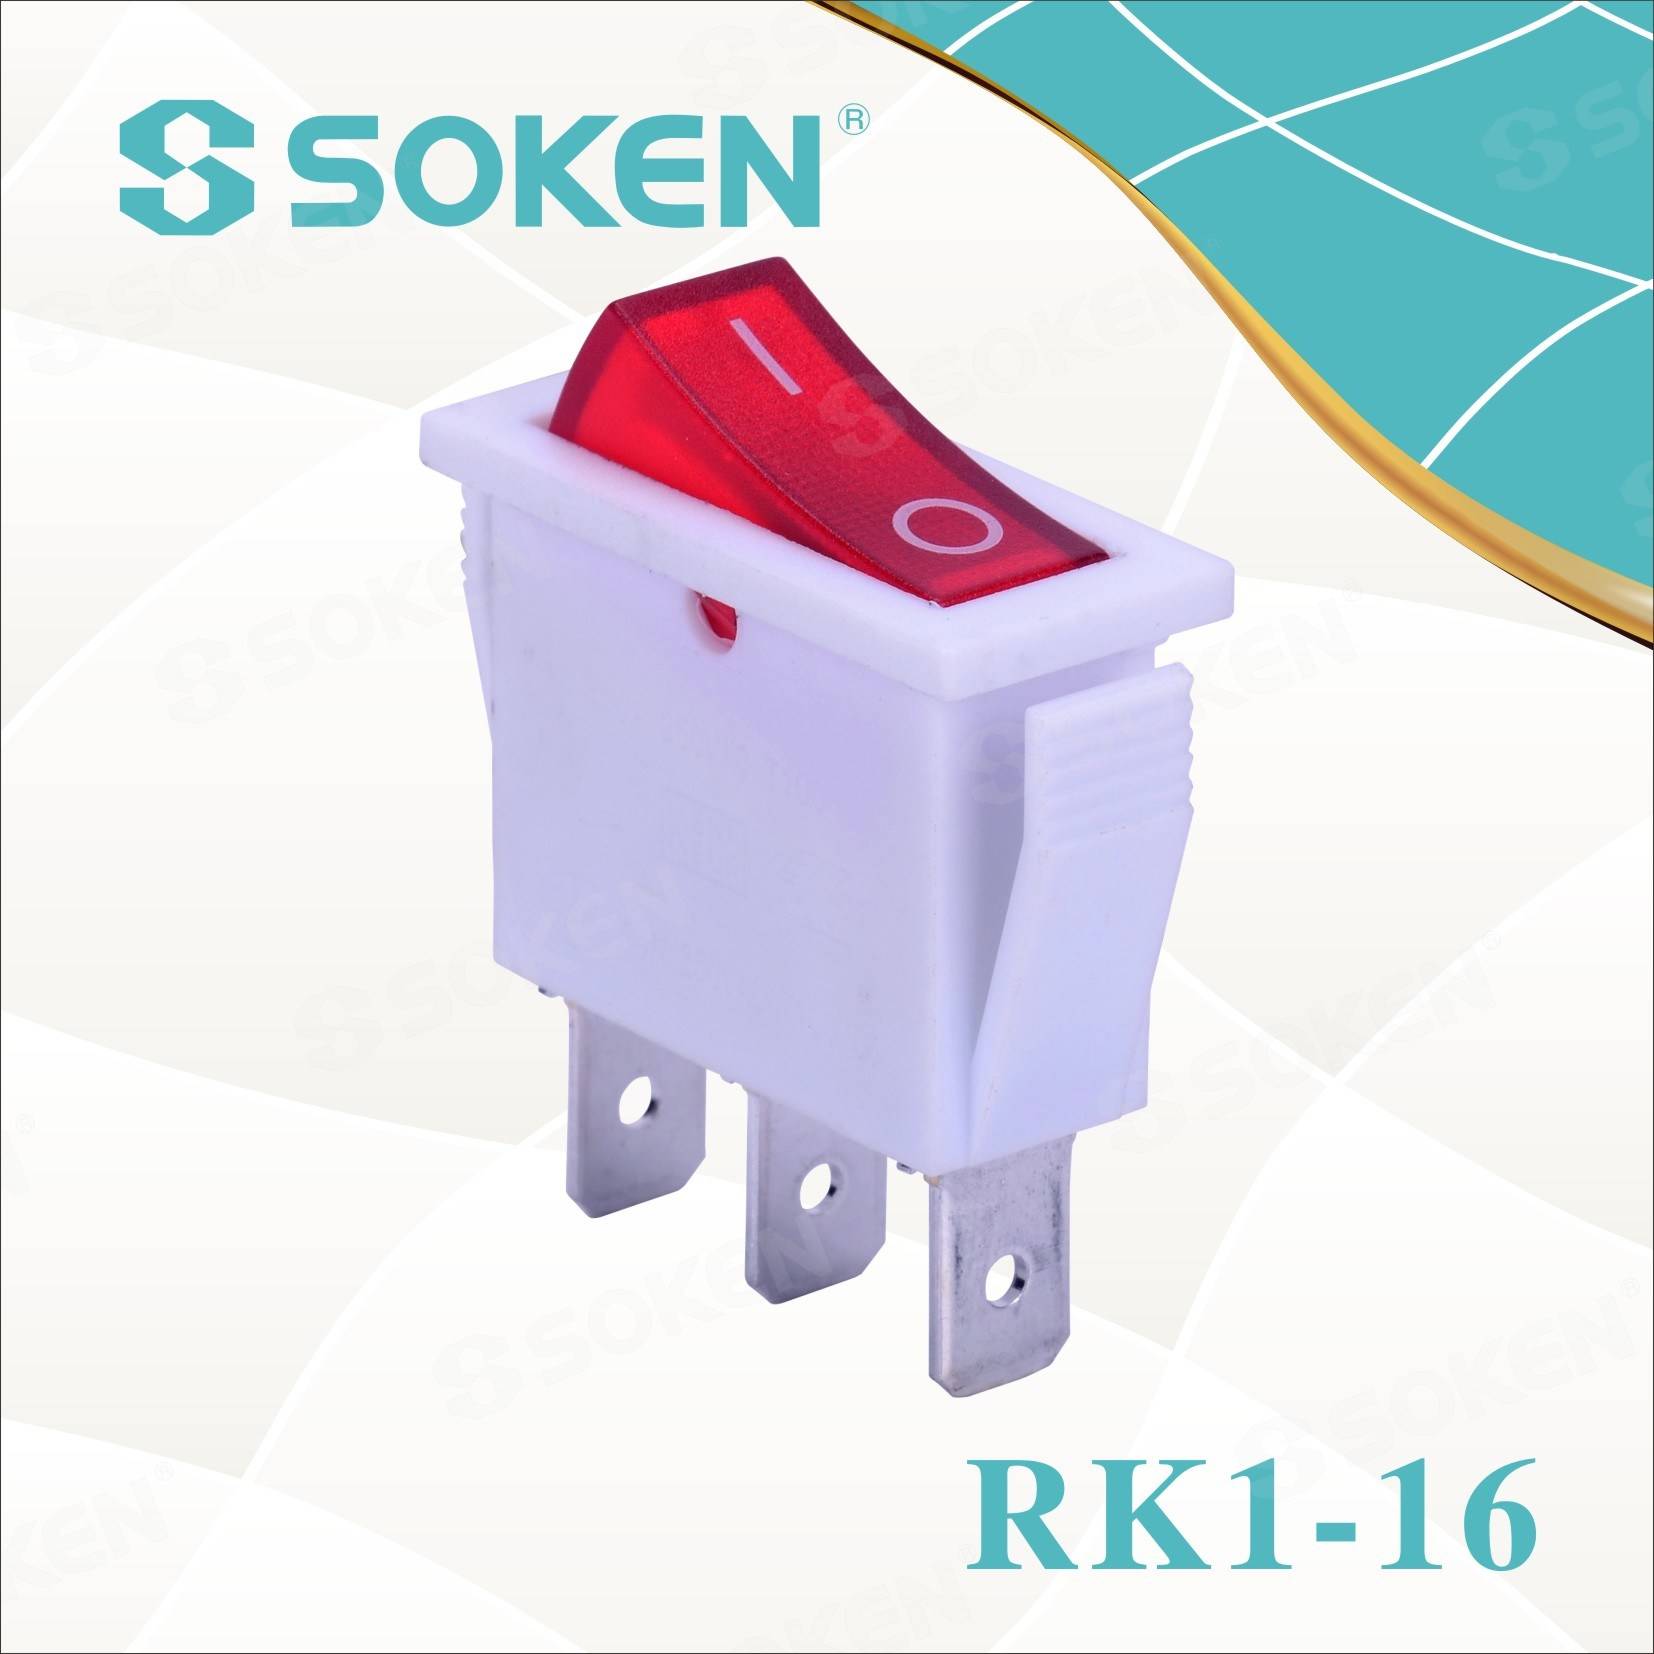 Factory best selling Waterproof Ring Led -
 Soken Rk1-16 1X1n W/R on off Rocker Switch – Master Soken Electrical